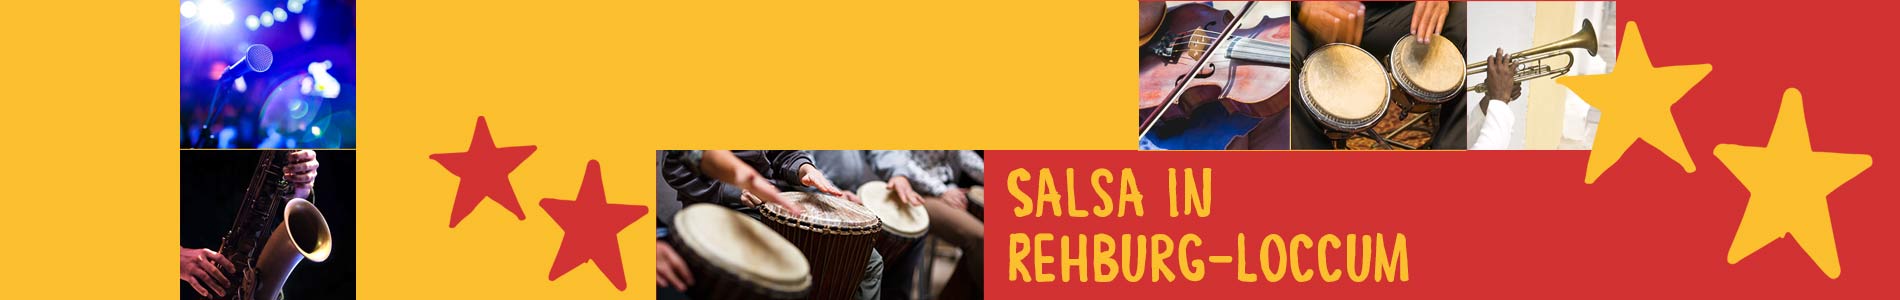 Salsa in Rehburg-Loccum – Salsa lernen und tanzen, Tanzkurse, Partys, Veranstaltungen